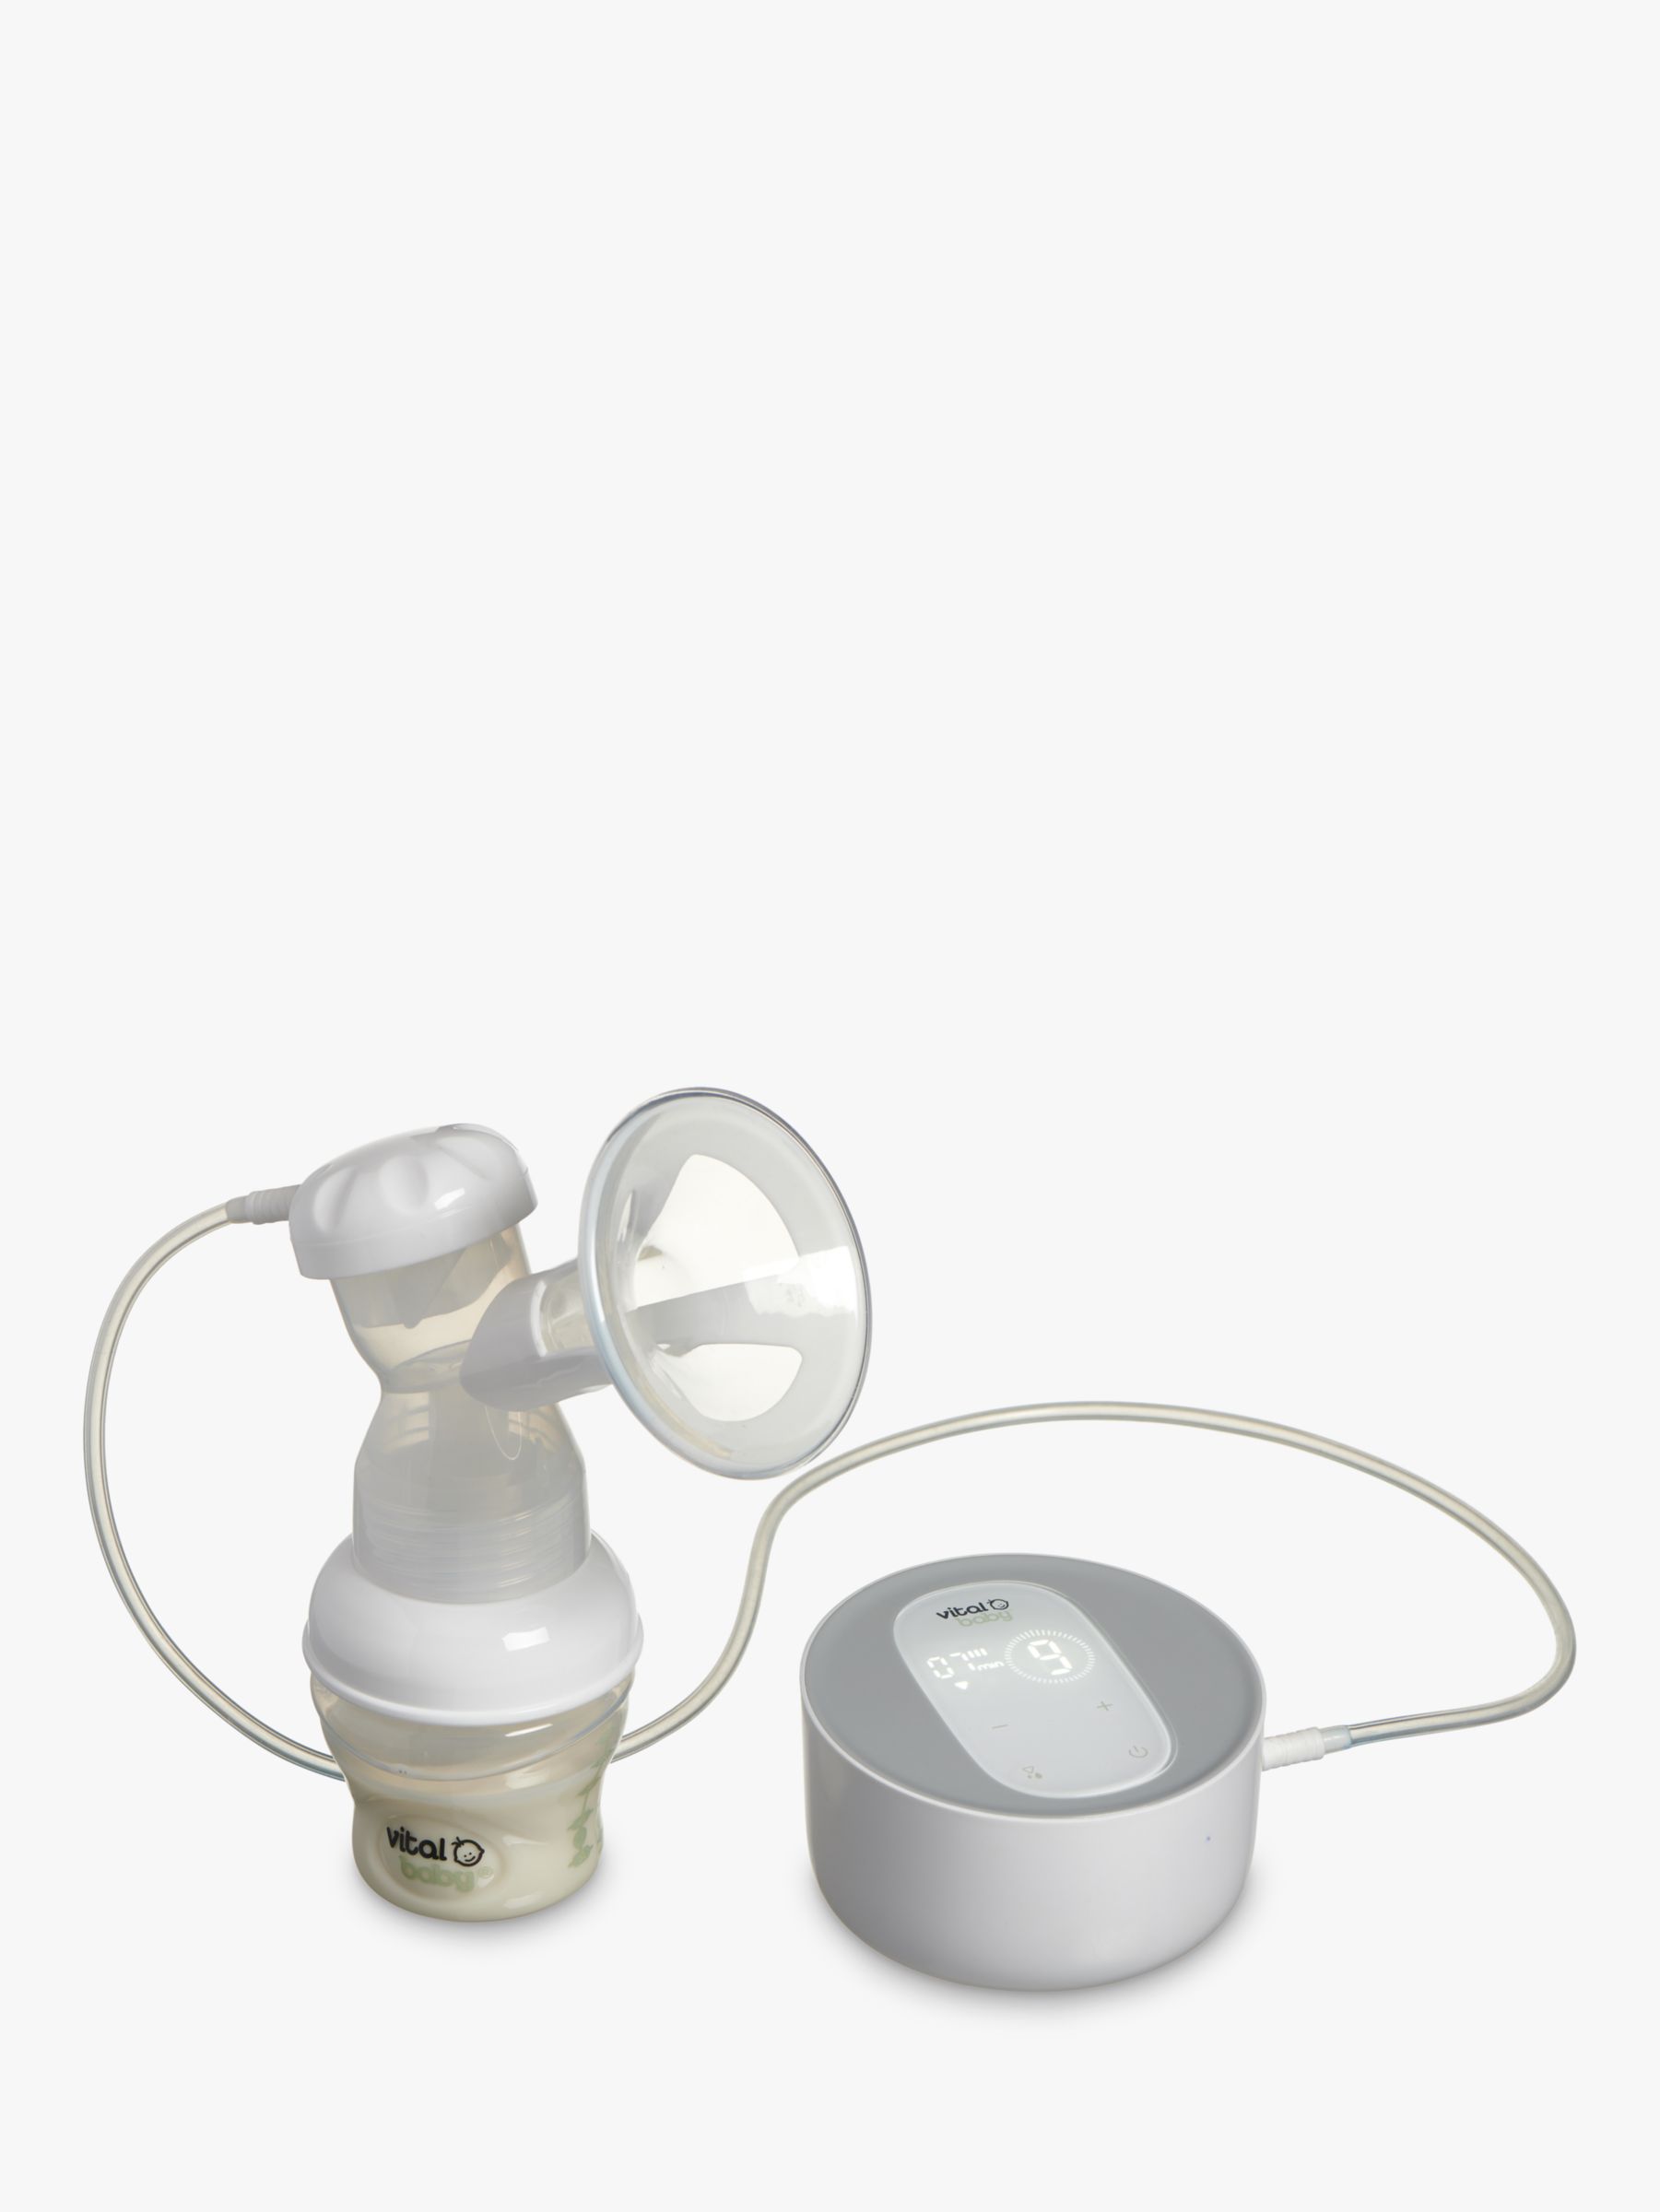 Image of Vital Baby Nurture Flexcone Electric Breast Pump